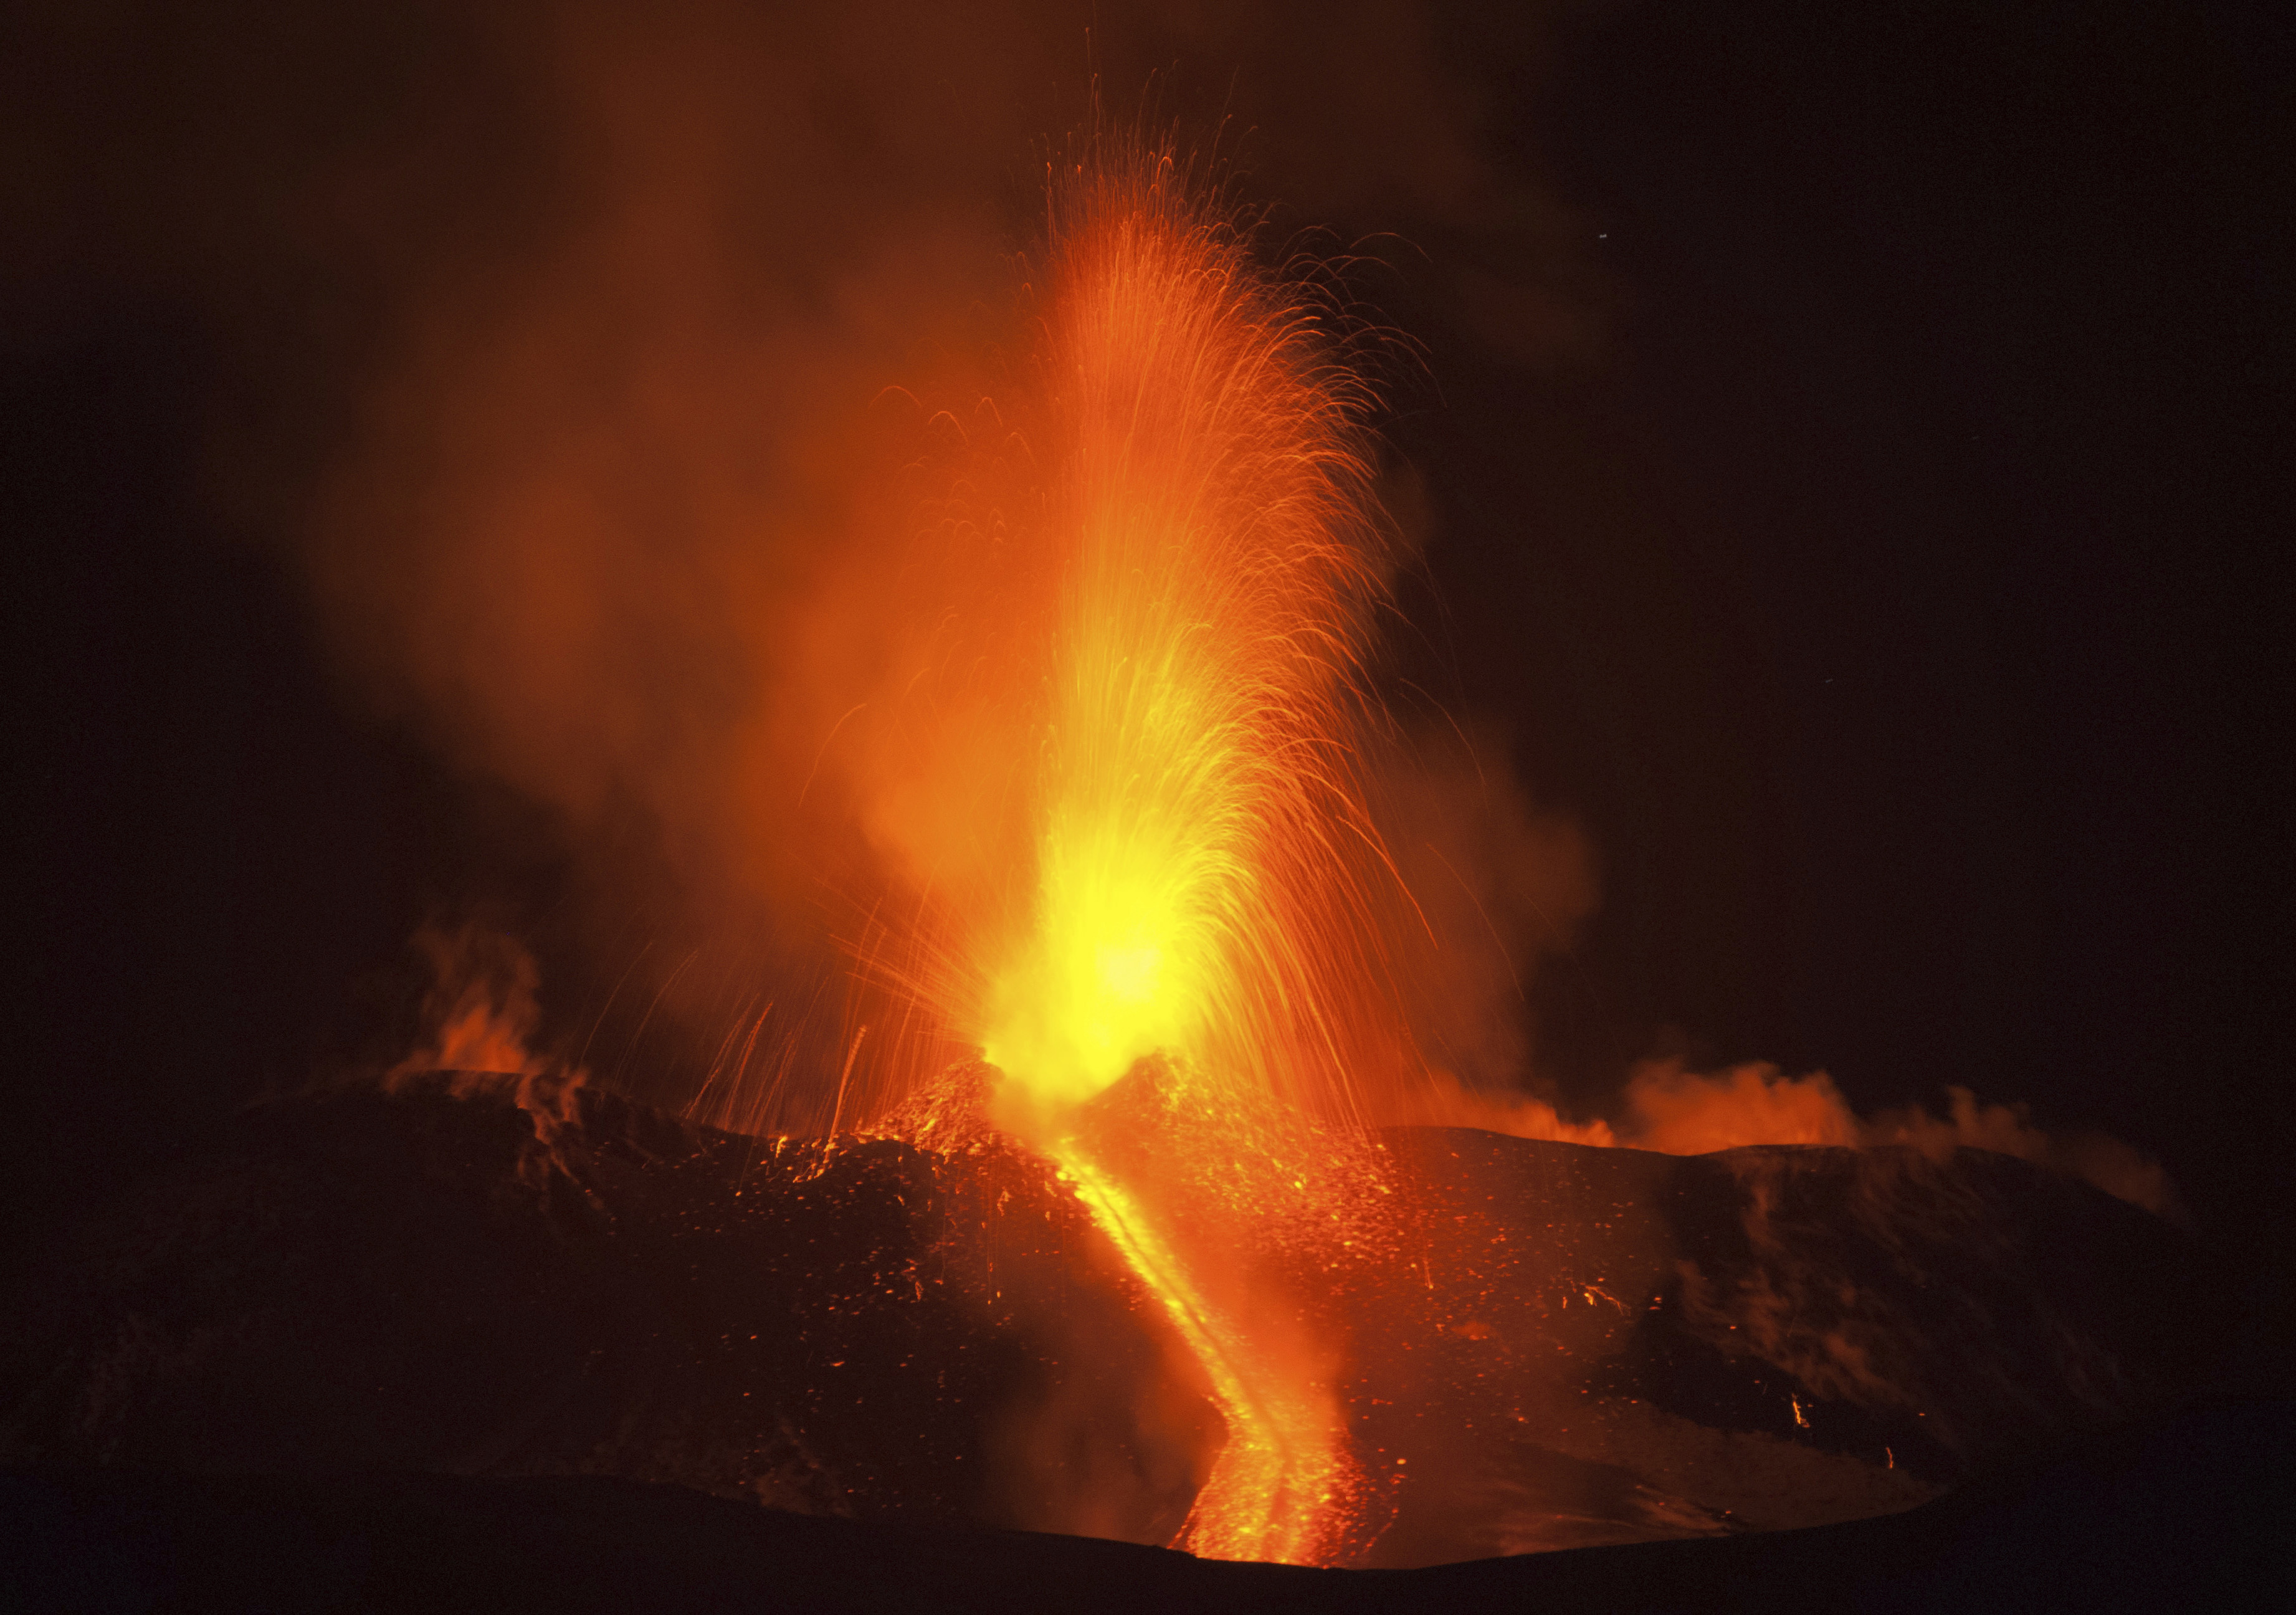 Етна изригна с мощни струи лава (снимки)